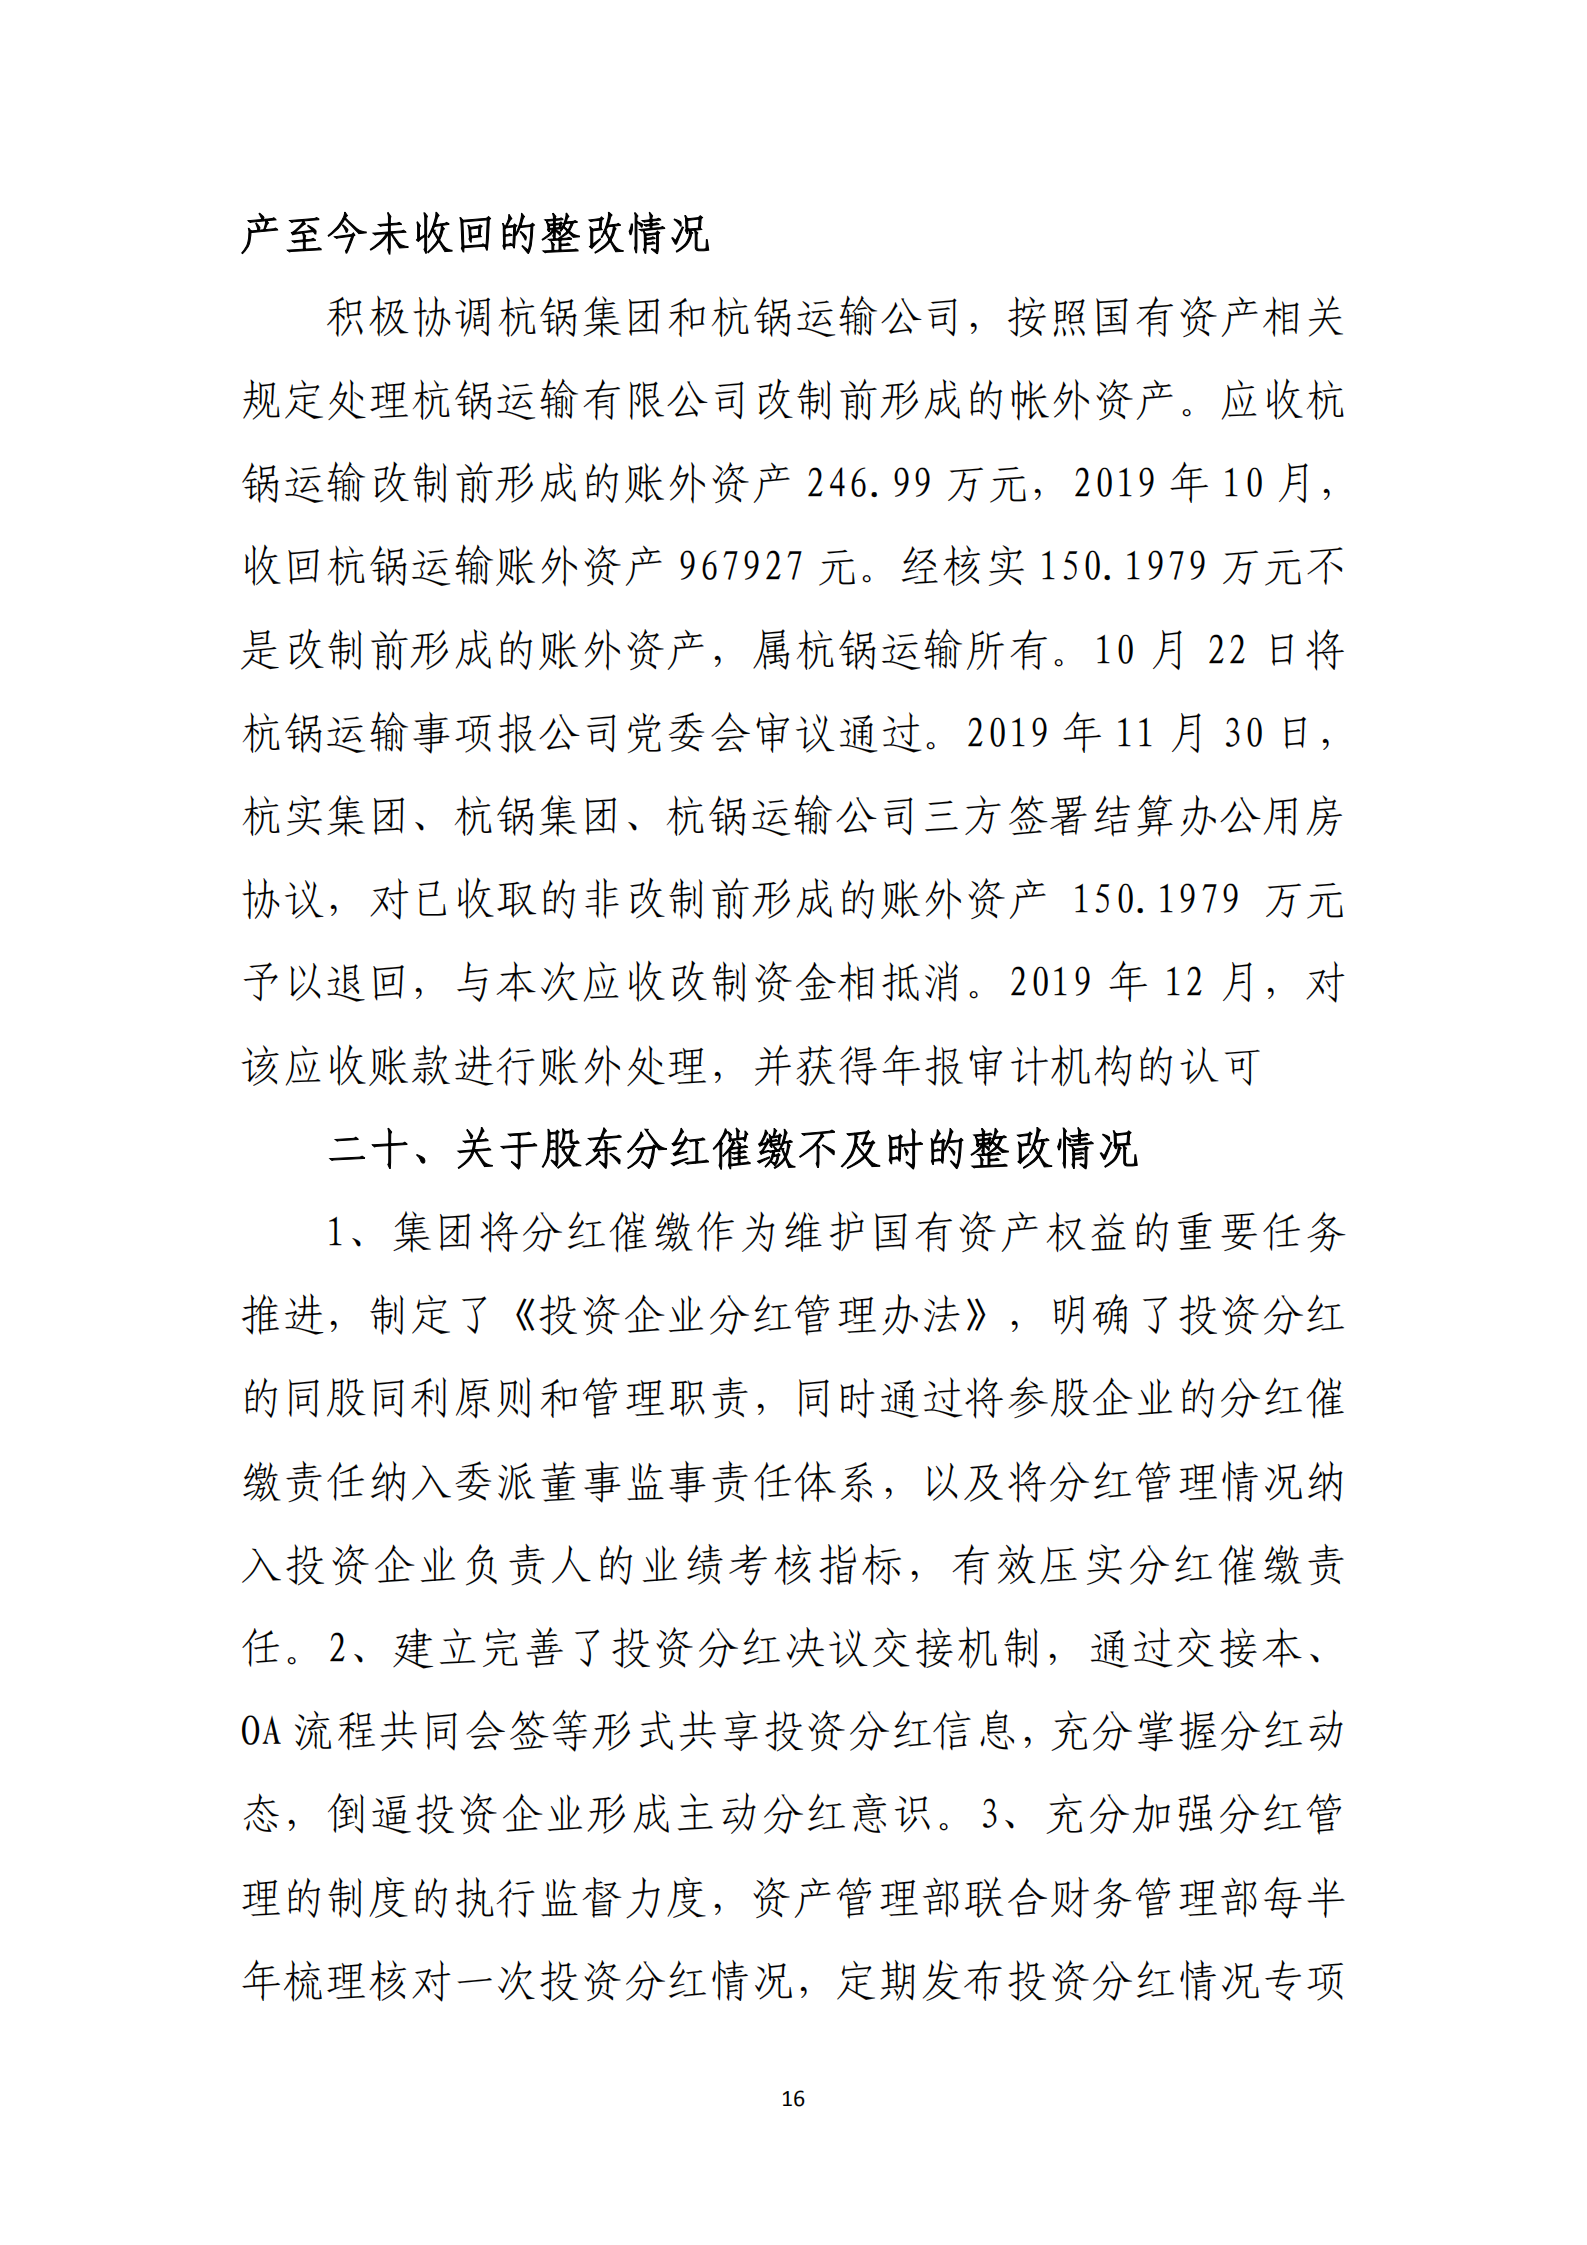 【体育365官方网站】中国有限公司党委关于巡察整改情况的通报_15.png